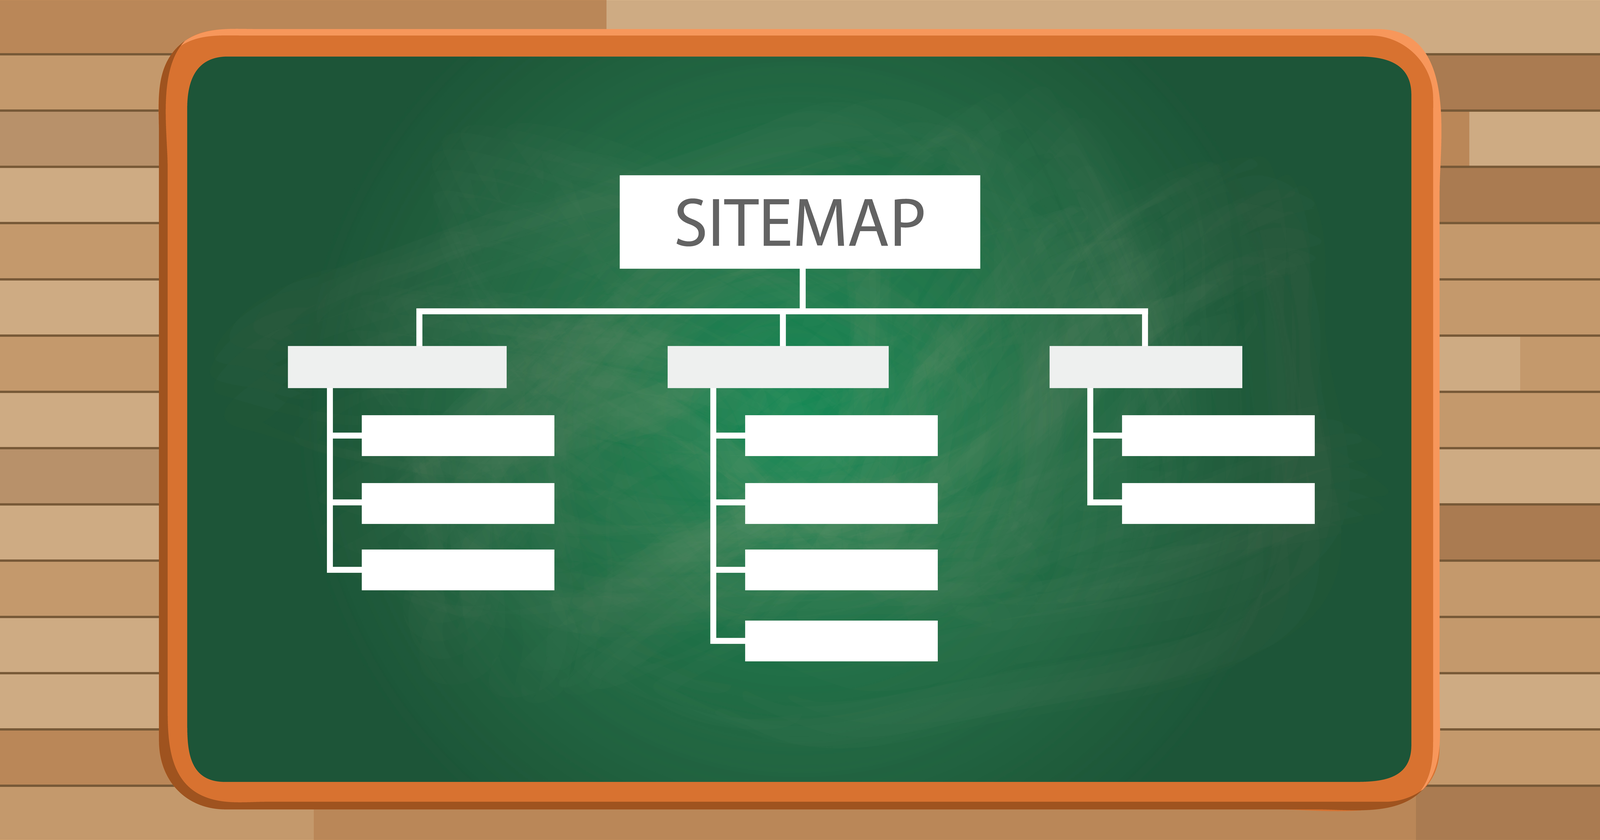 Sitemap (sơ đồ trang web) là một bản đồ chi tiết về trang web